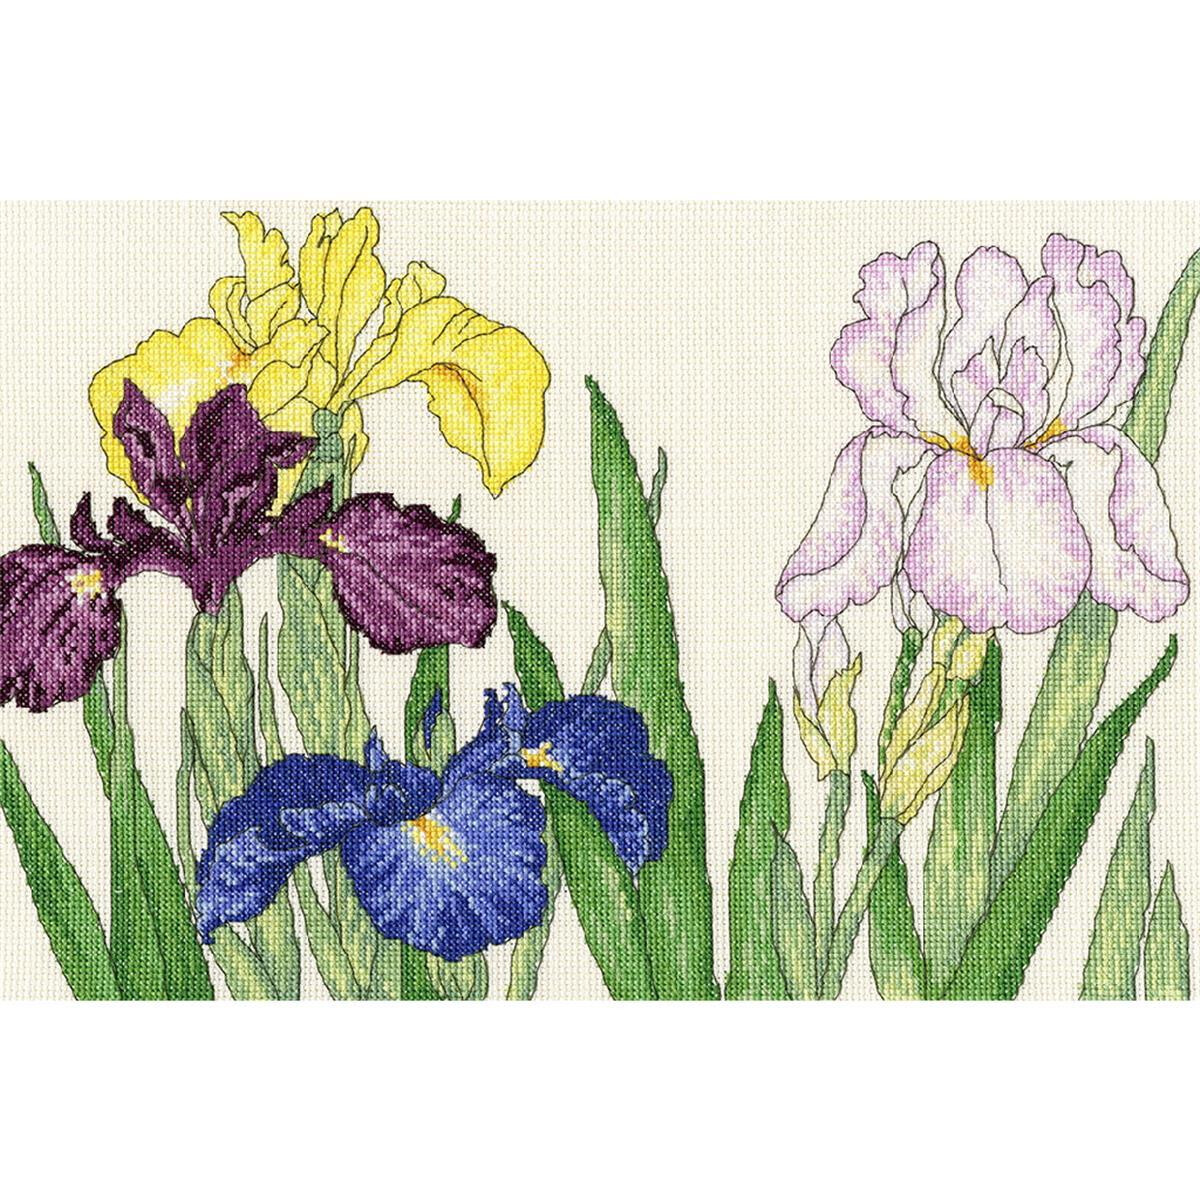 Un pacchetto di ricami colorati con diversi fiori di iris...